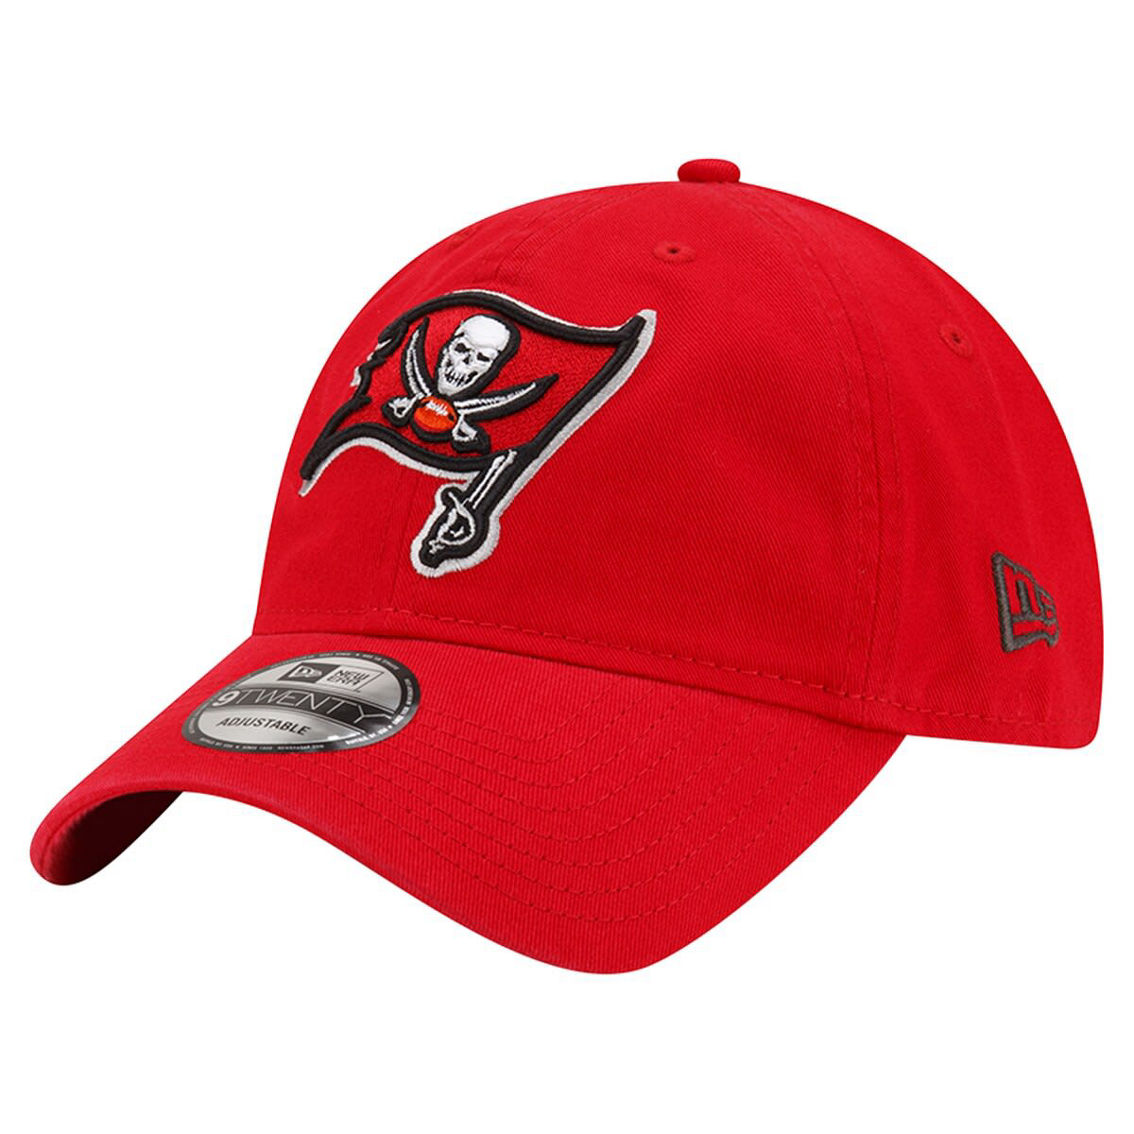 New Era Men's Red Tampa Bay Buccaneers Distinct 9TWENTY Adjustable Hat - Image 4 of 4